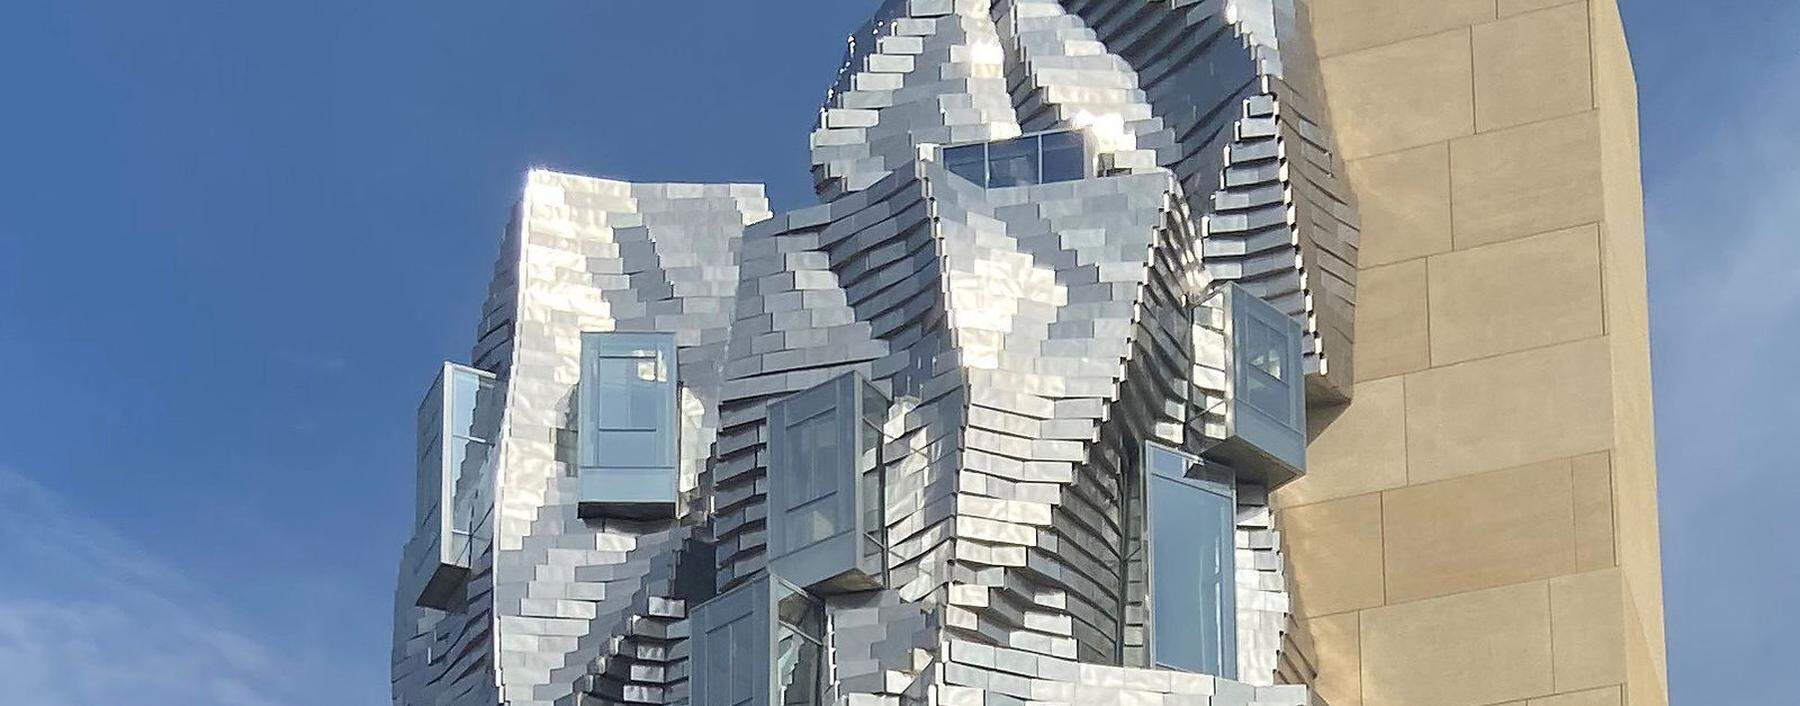 Nach vielen Jahren Planung: Frank Gehrys Landmark-Architektur bereichert das Luma und die Stadt Arles. 